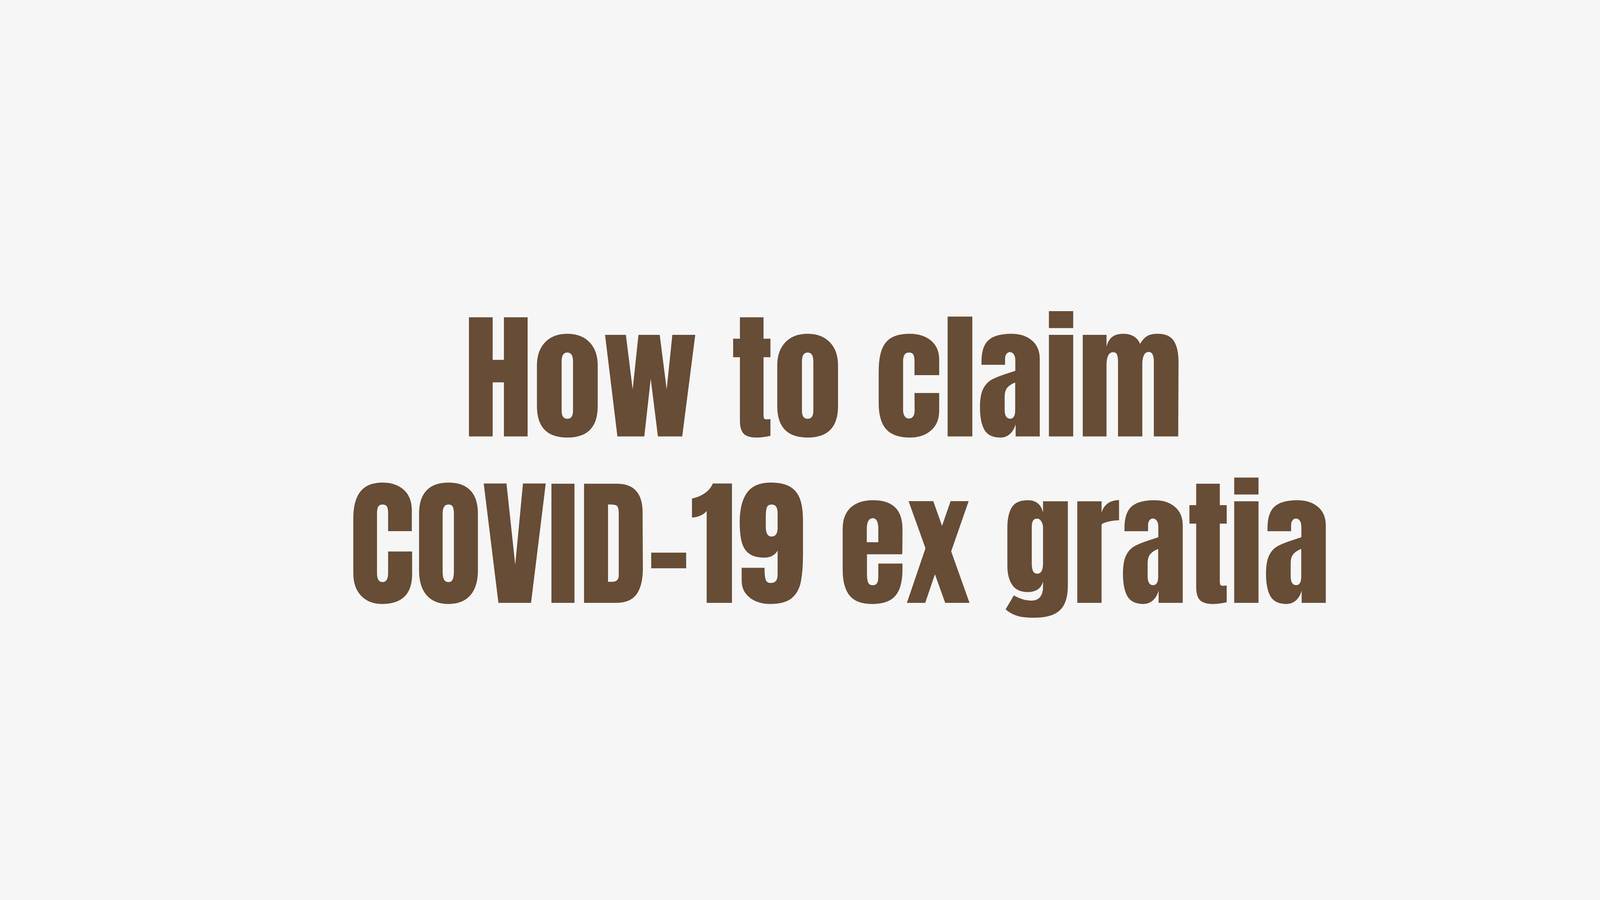 How to claim COVID-19 ex gratia in Hyderabad, Telangana